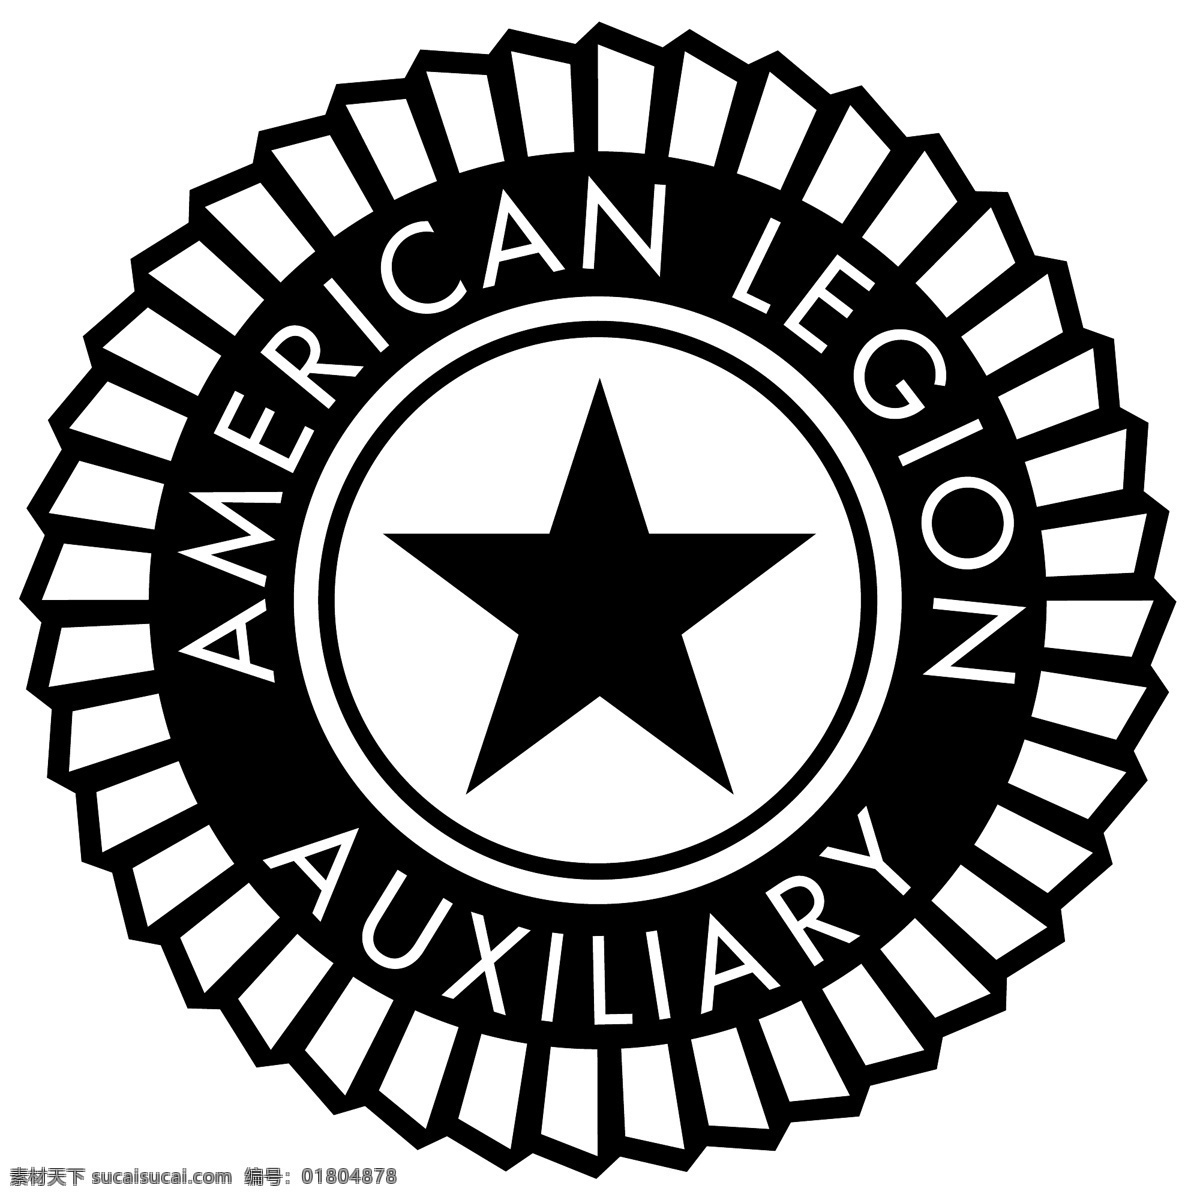 美国 辅助 军团 免费 标志 psd源文件 logo设计